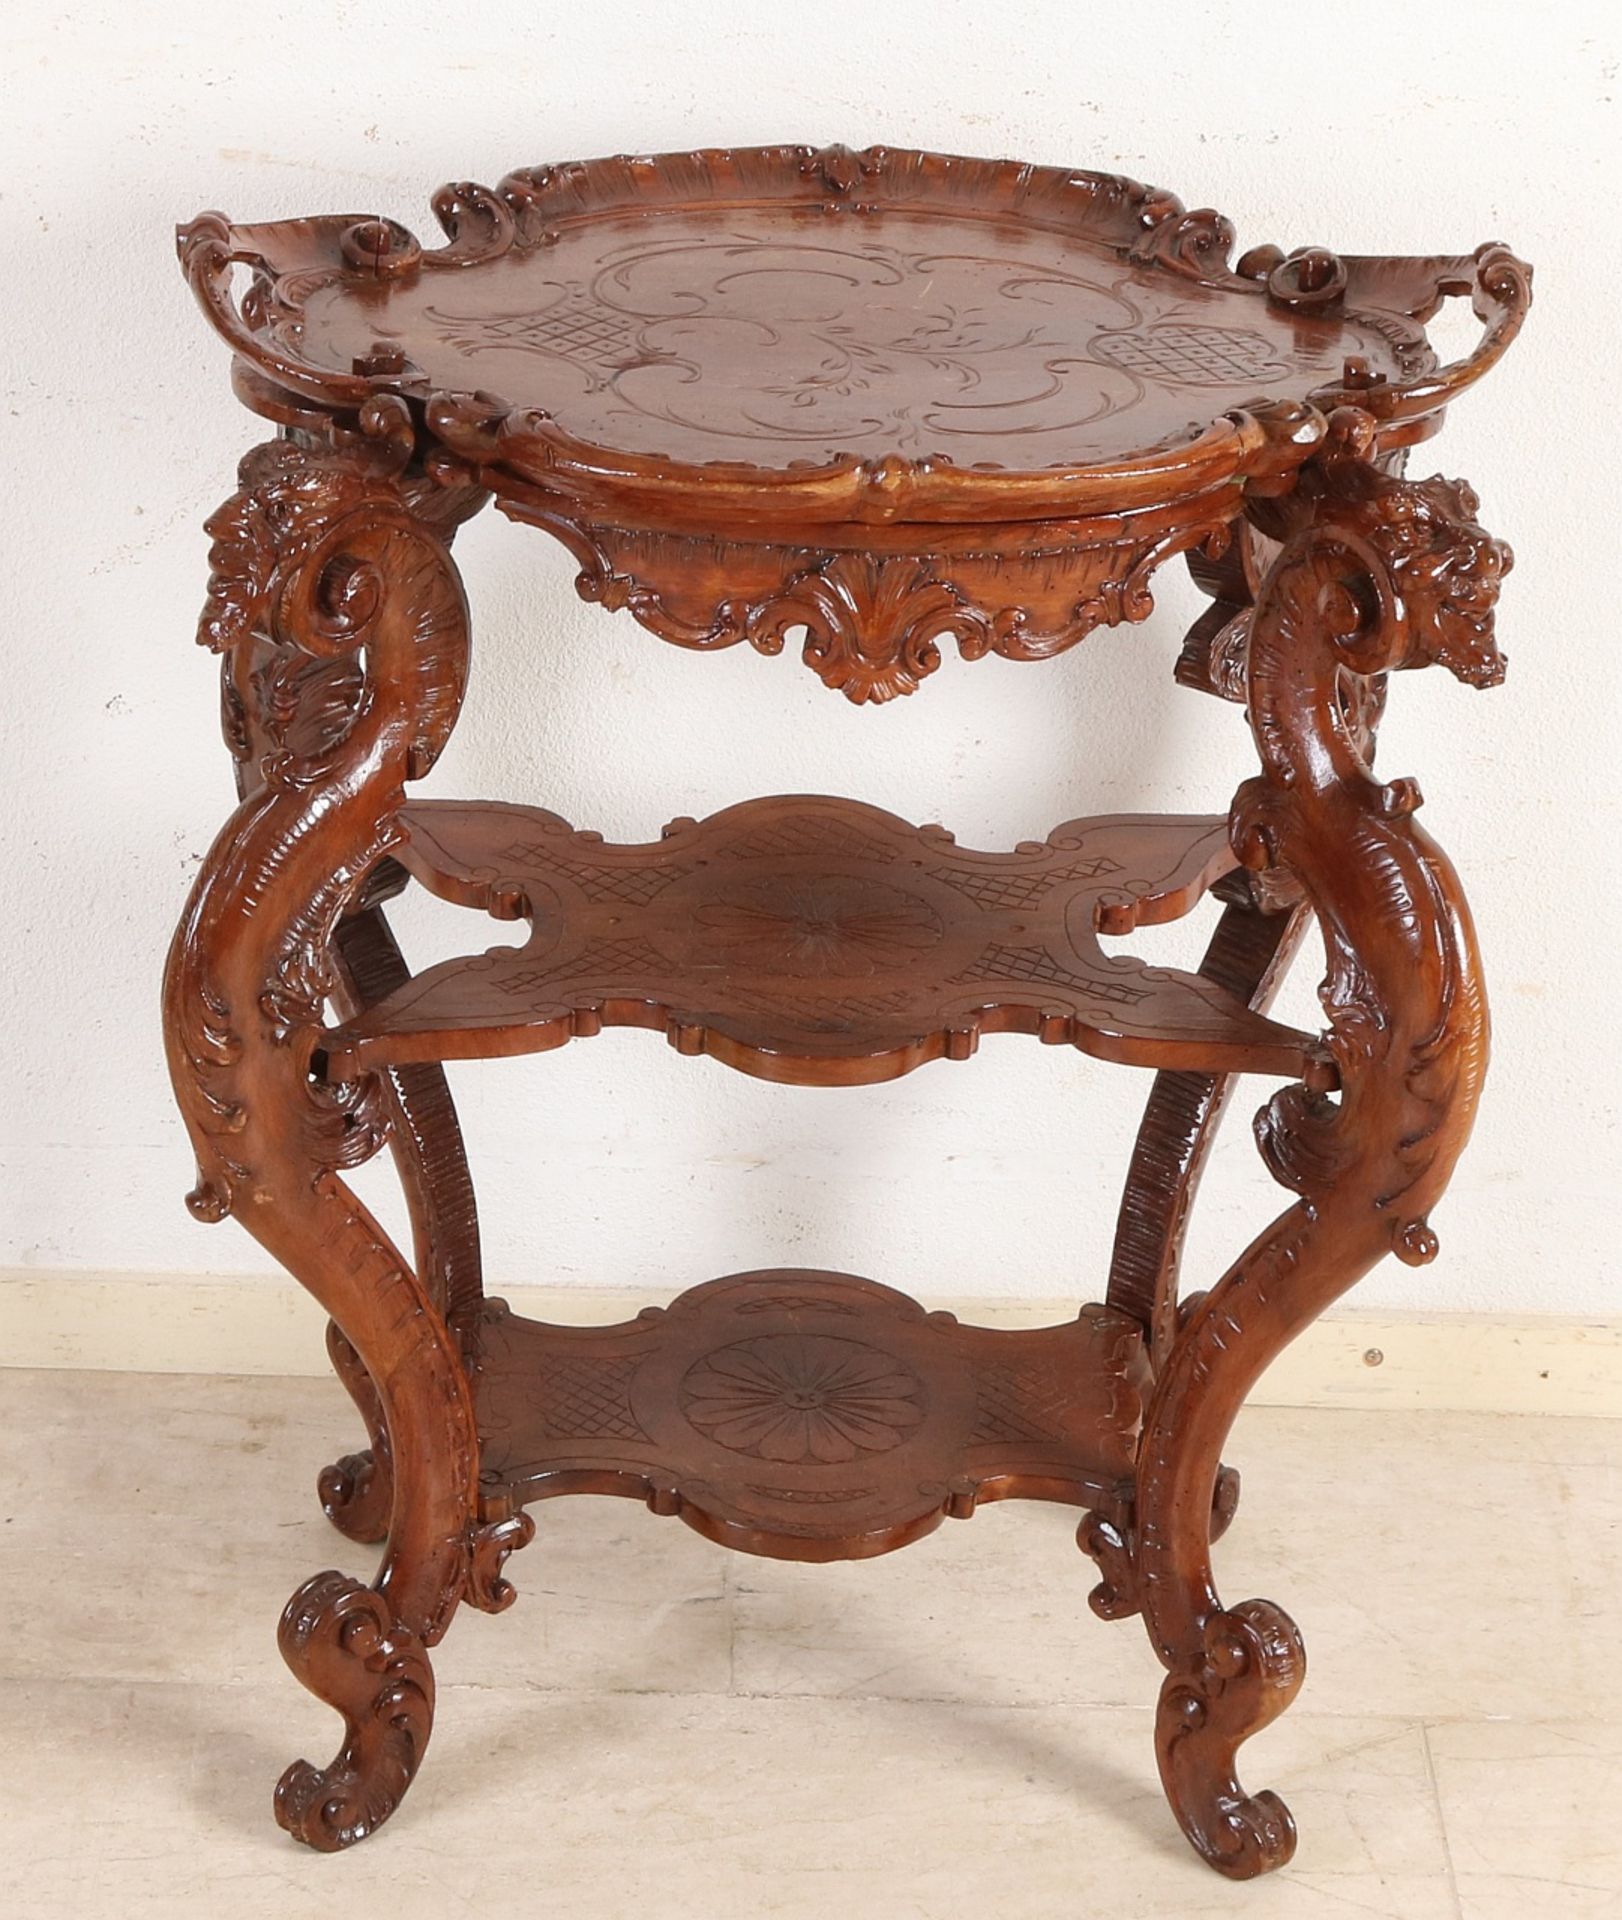 Geschnitzter Etagere-Tisch aus französischem Walnussholz aus dem 19. Jahrhundert mit herausnehmbar